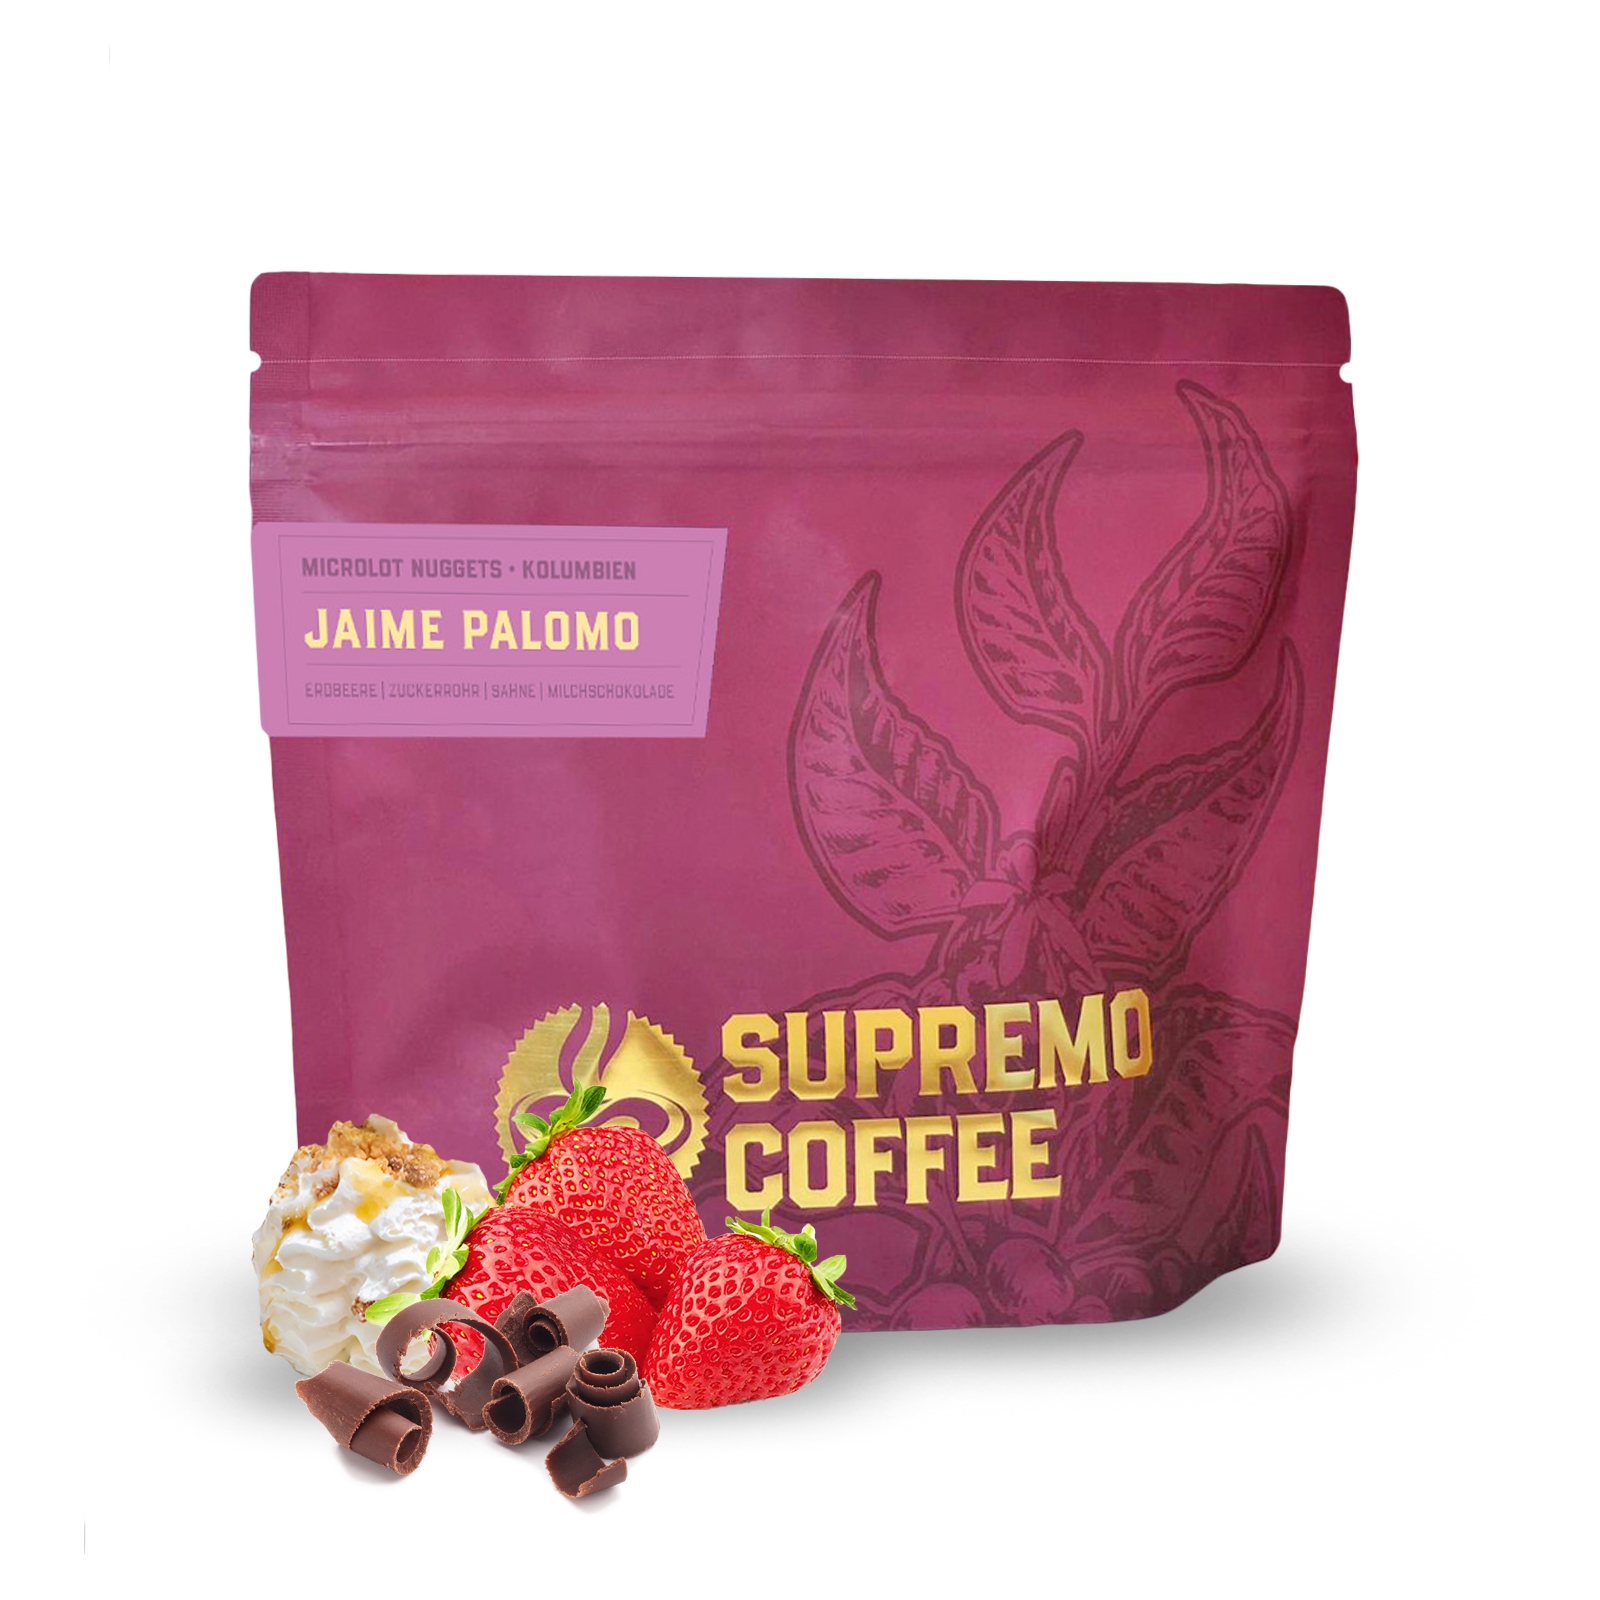 Specialty coffee Supremo Colombia JAIME PALOMO